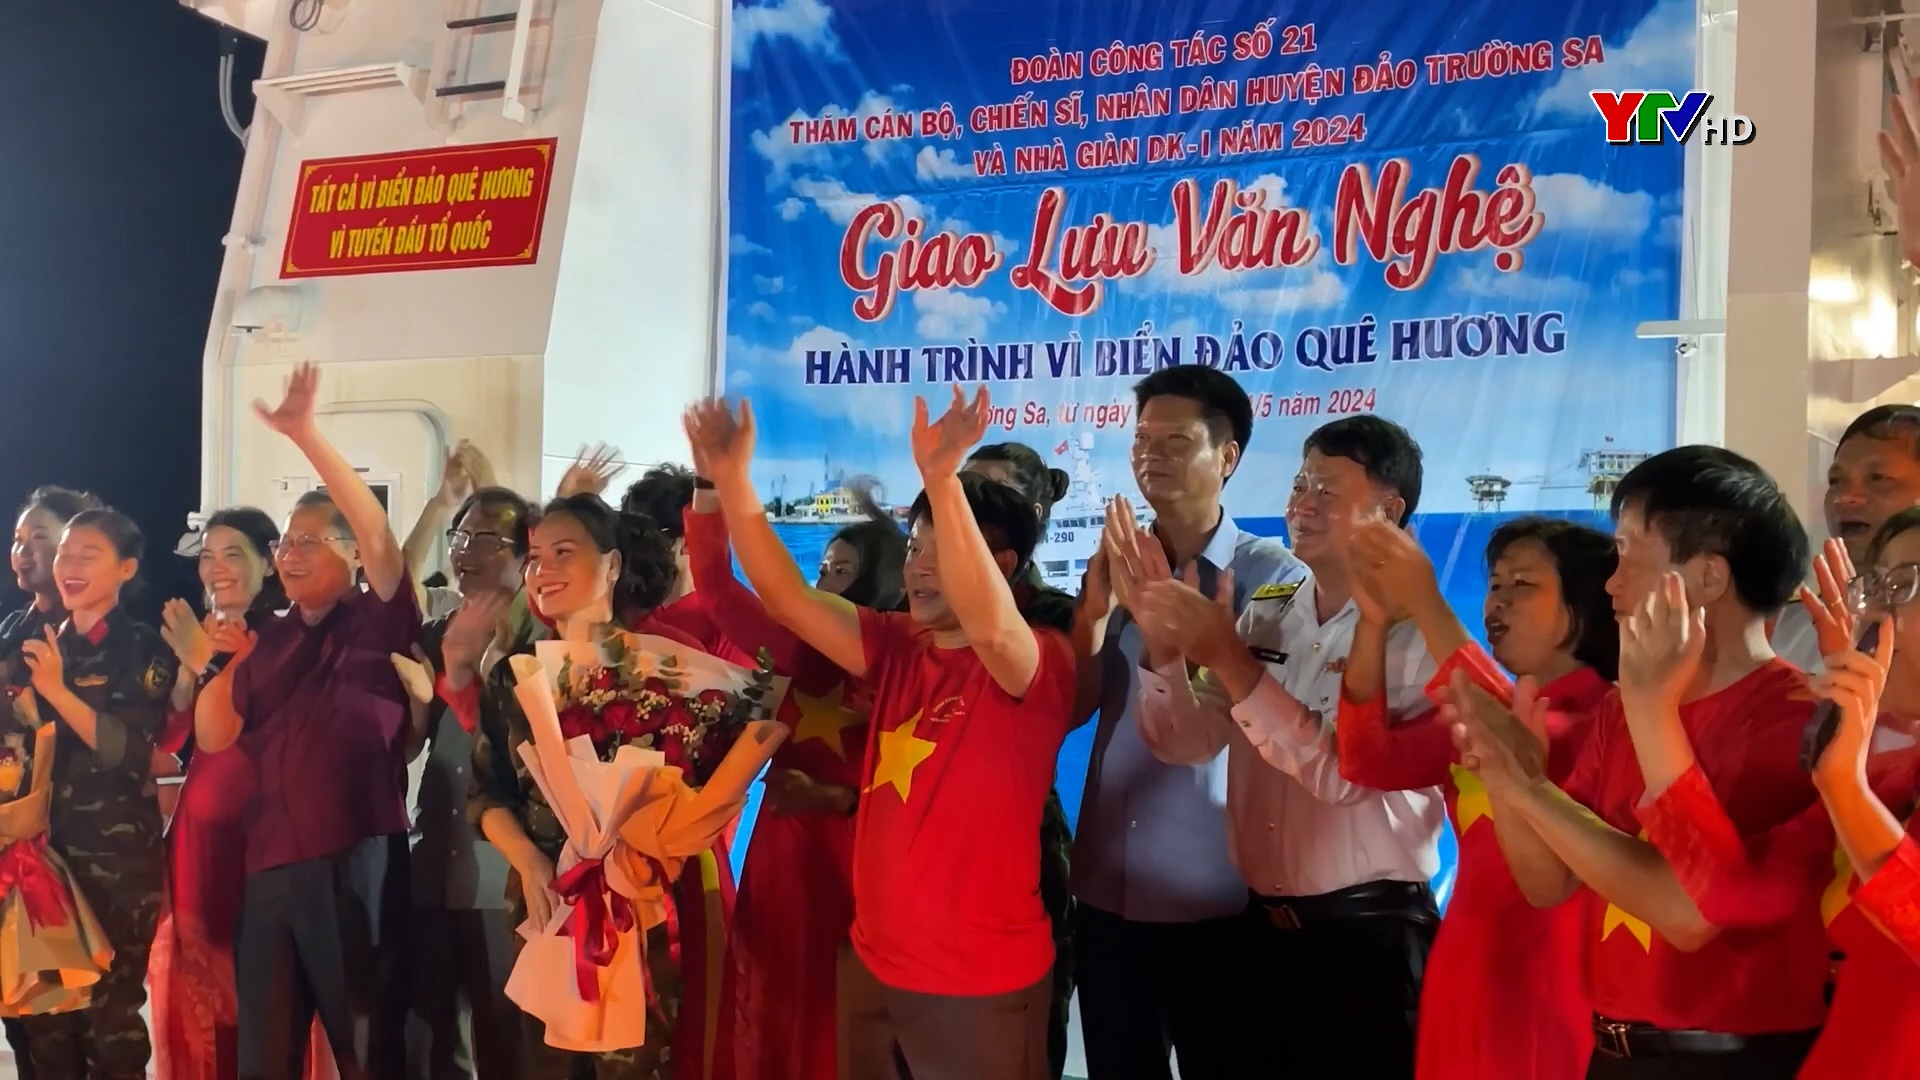 Đoàn công tác tỉnh Yên Bái tham dự đêm giao lưu văn nghệ "Hành trình về biển đảo quê hương"